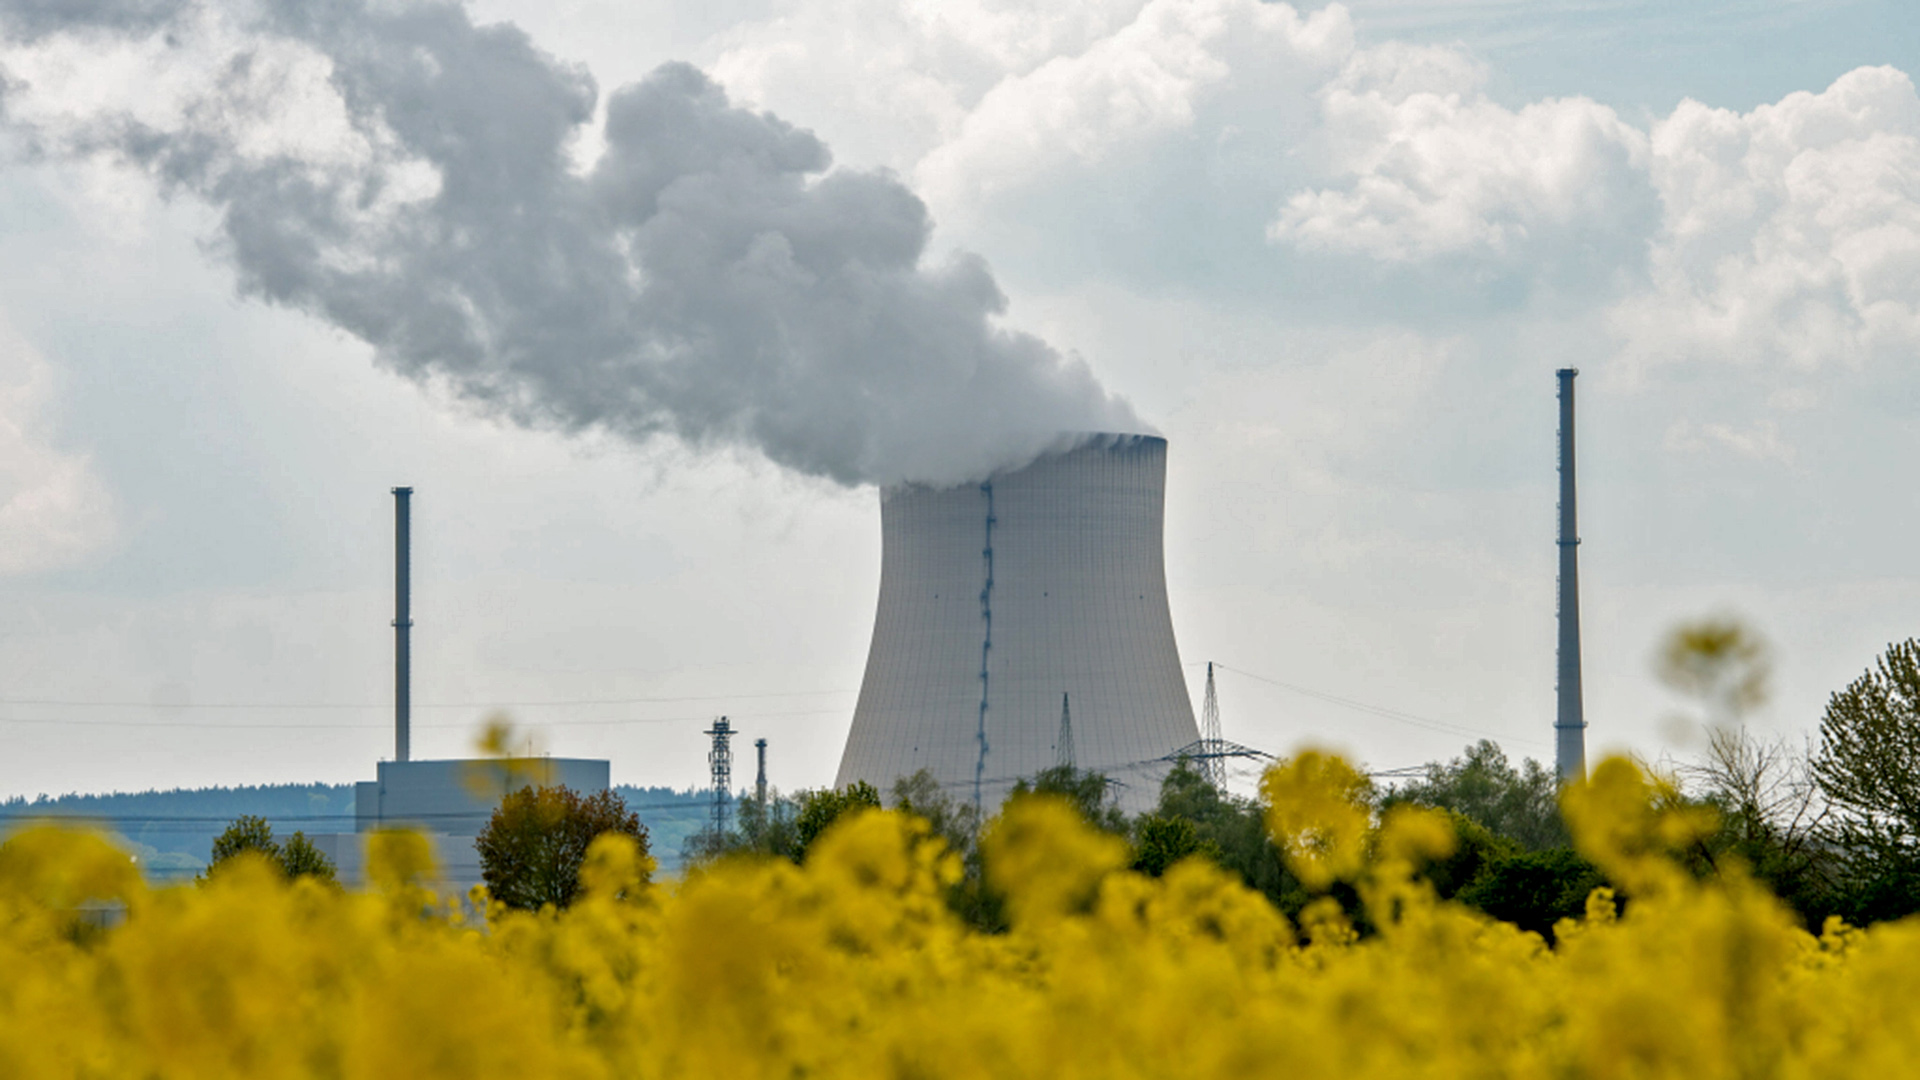 Atomkraftwerk Isar 1: Wegen der Abschaltung nach Fukushima hatte E.ON geklagt | dpa